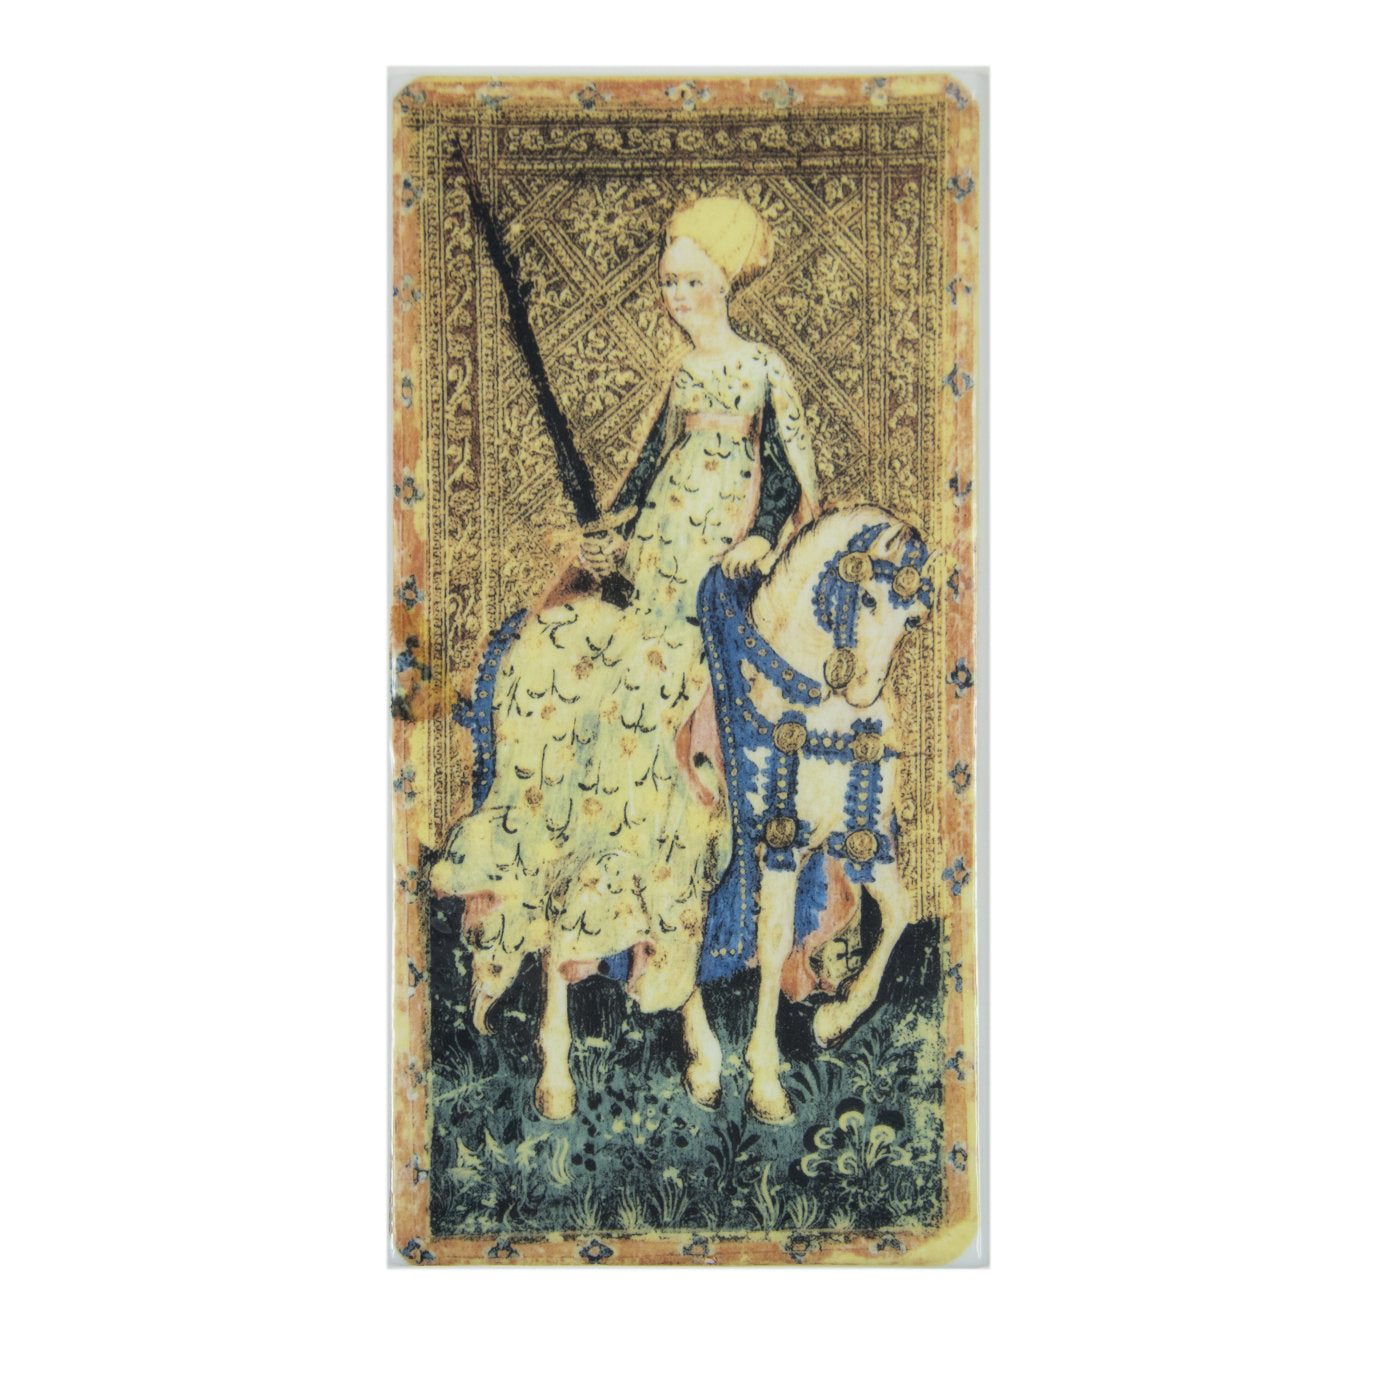 Tarot Card The Queen of Swords Set of 2 - Main view